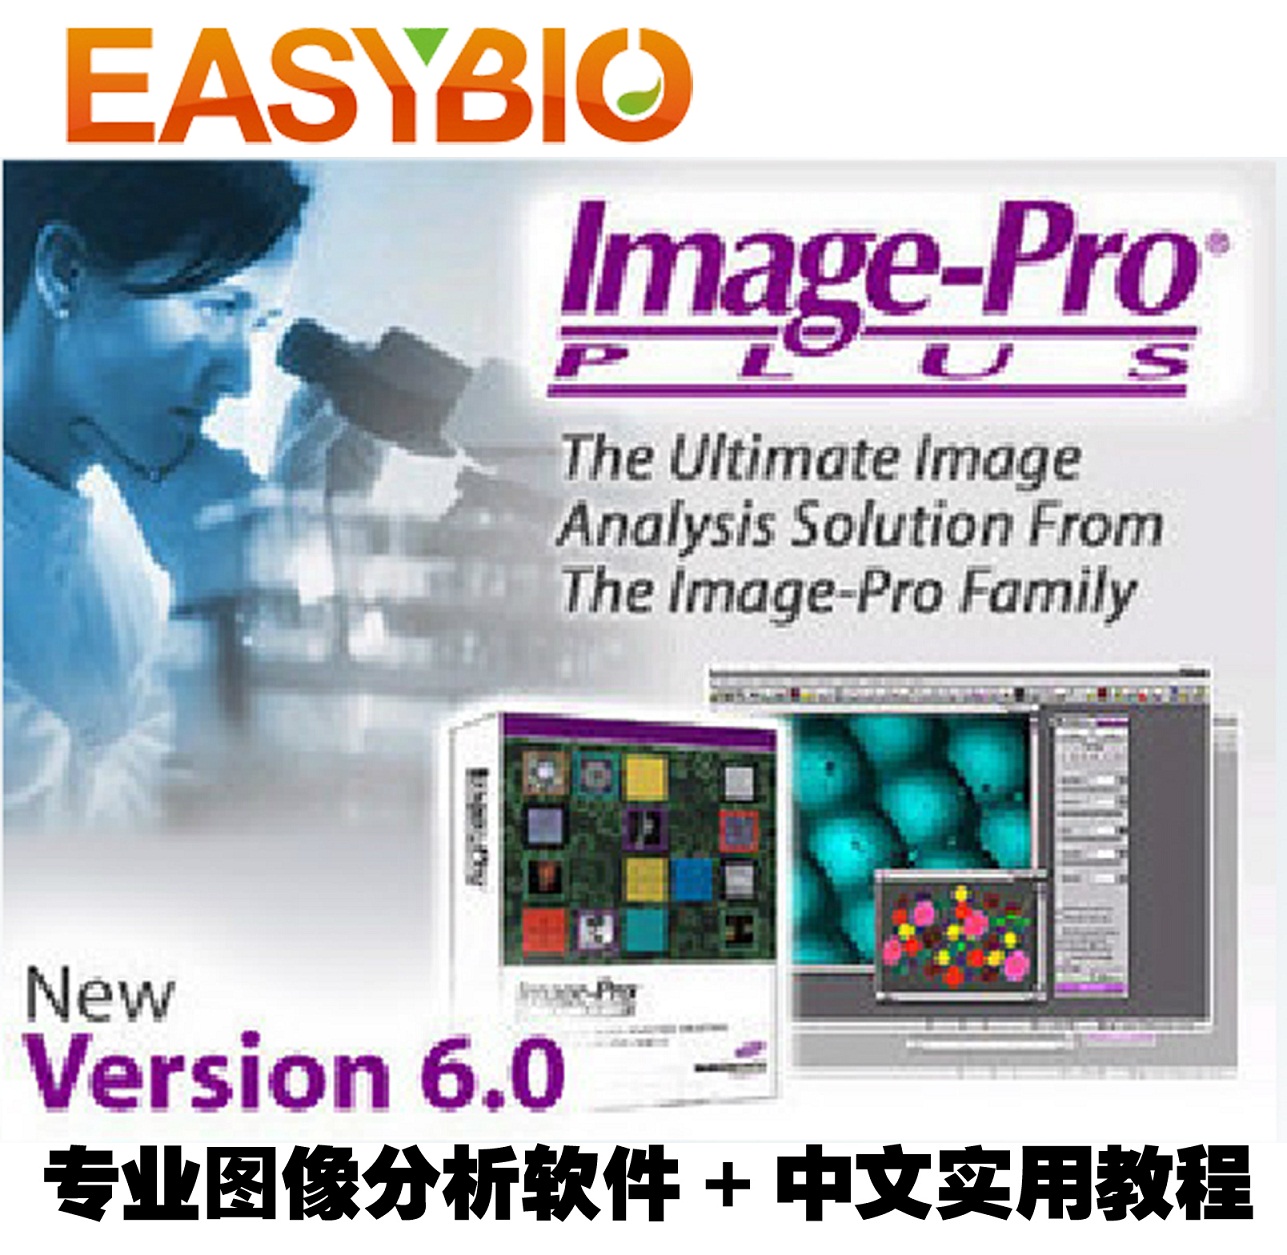 专业图像分析软件 Image pro plus 6.0 /ipp 6.0 送实用教程